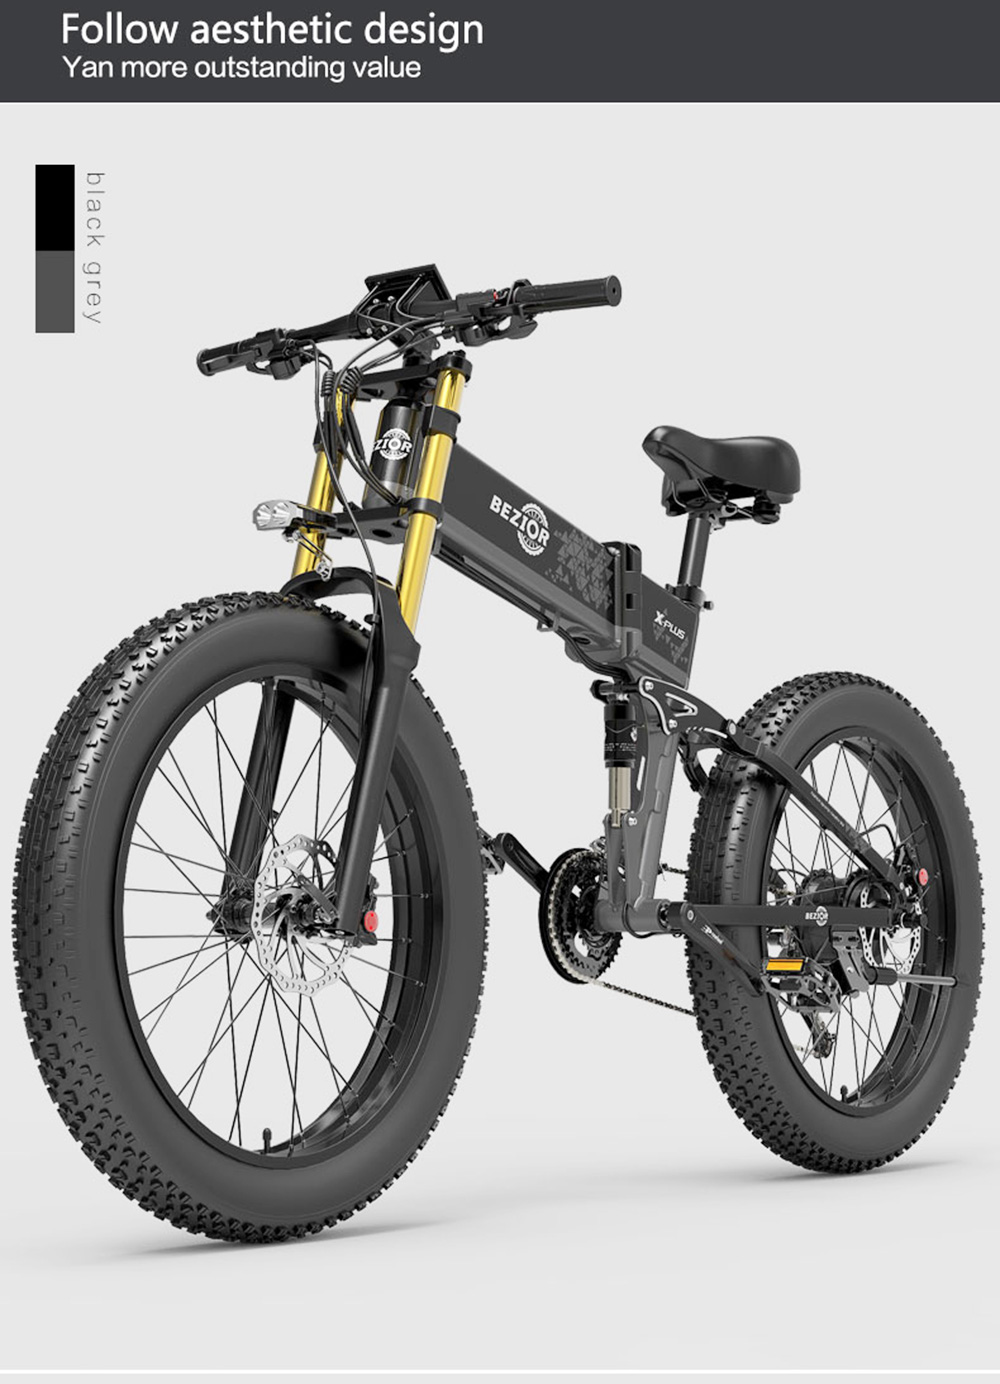 Bicicletta elettrica BEZIOR X-PLUS 26 pollici 1500 W 40 KM/H 48 V 17,5 Ah Batteria blu